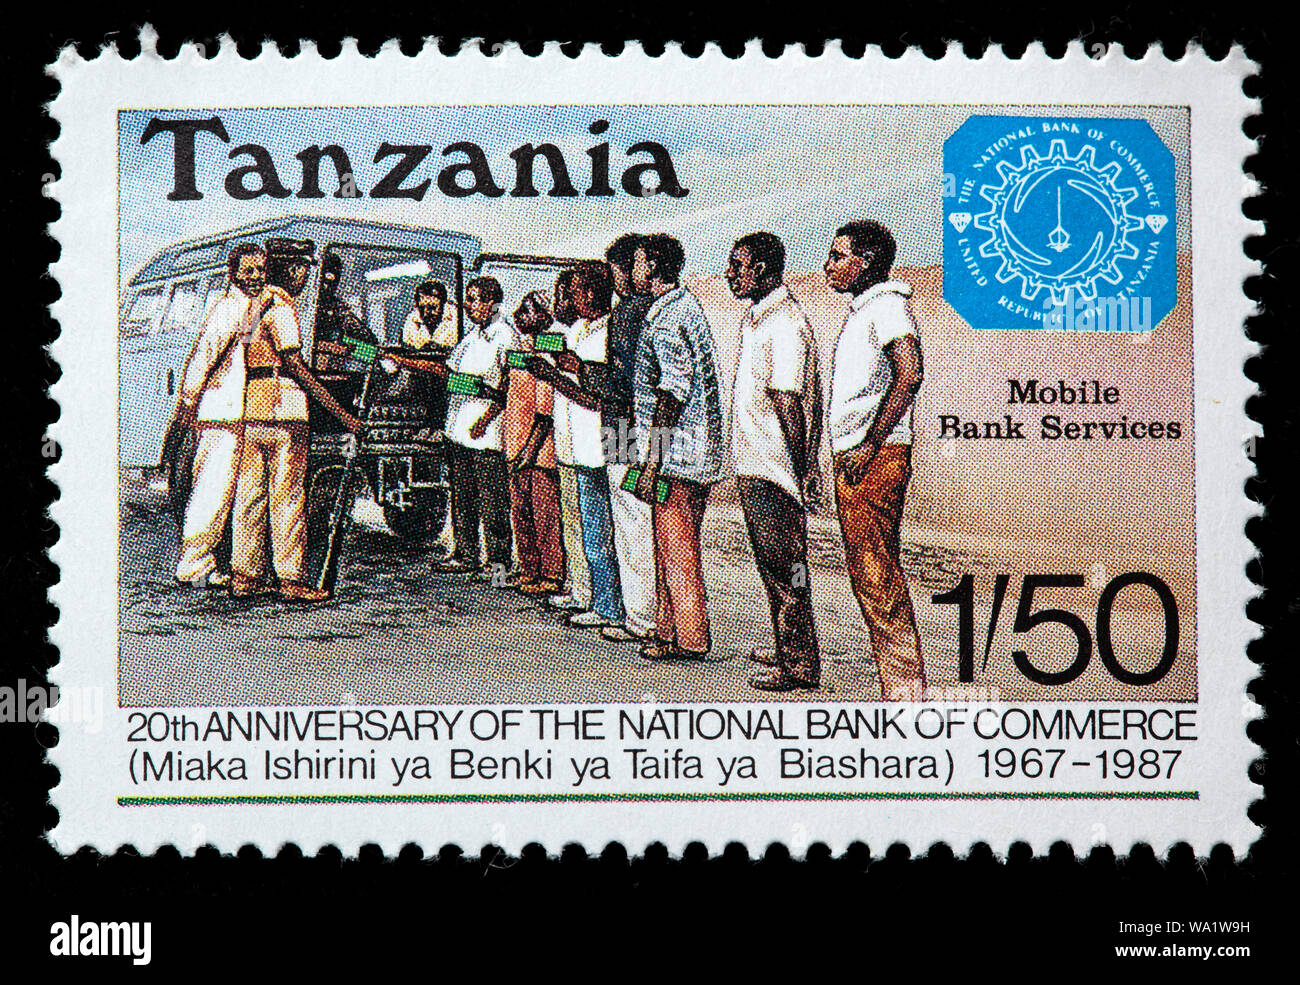 20e anniversaire de la Banque Nationale de Commerce, Mobile le service de la banque, timbre-poste, Tanzanie, 1987 Banque D'Images